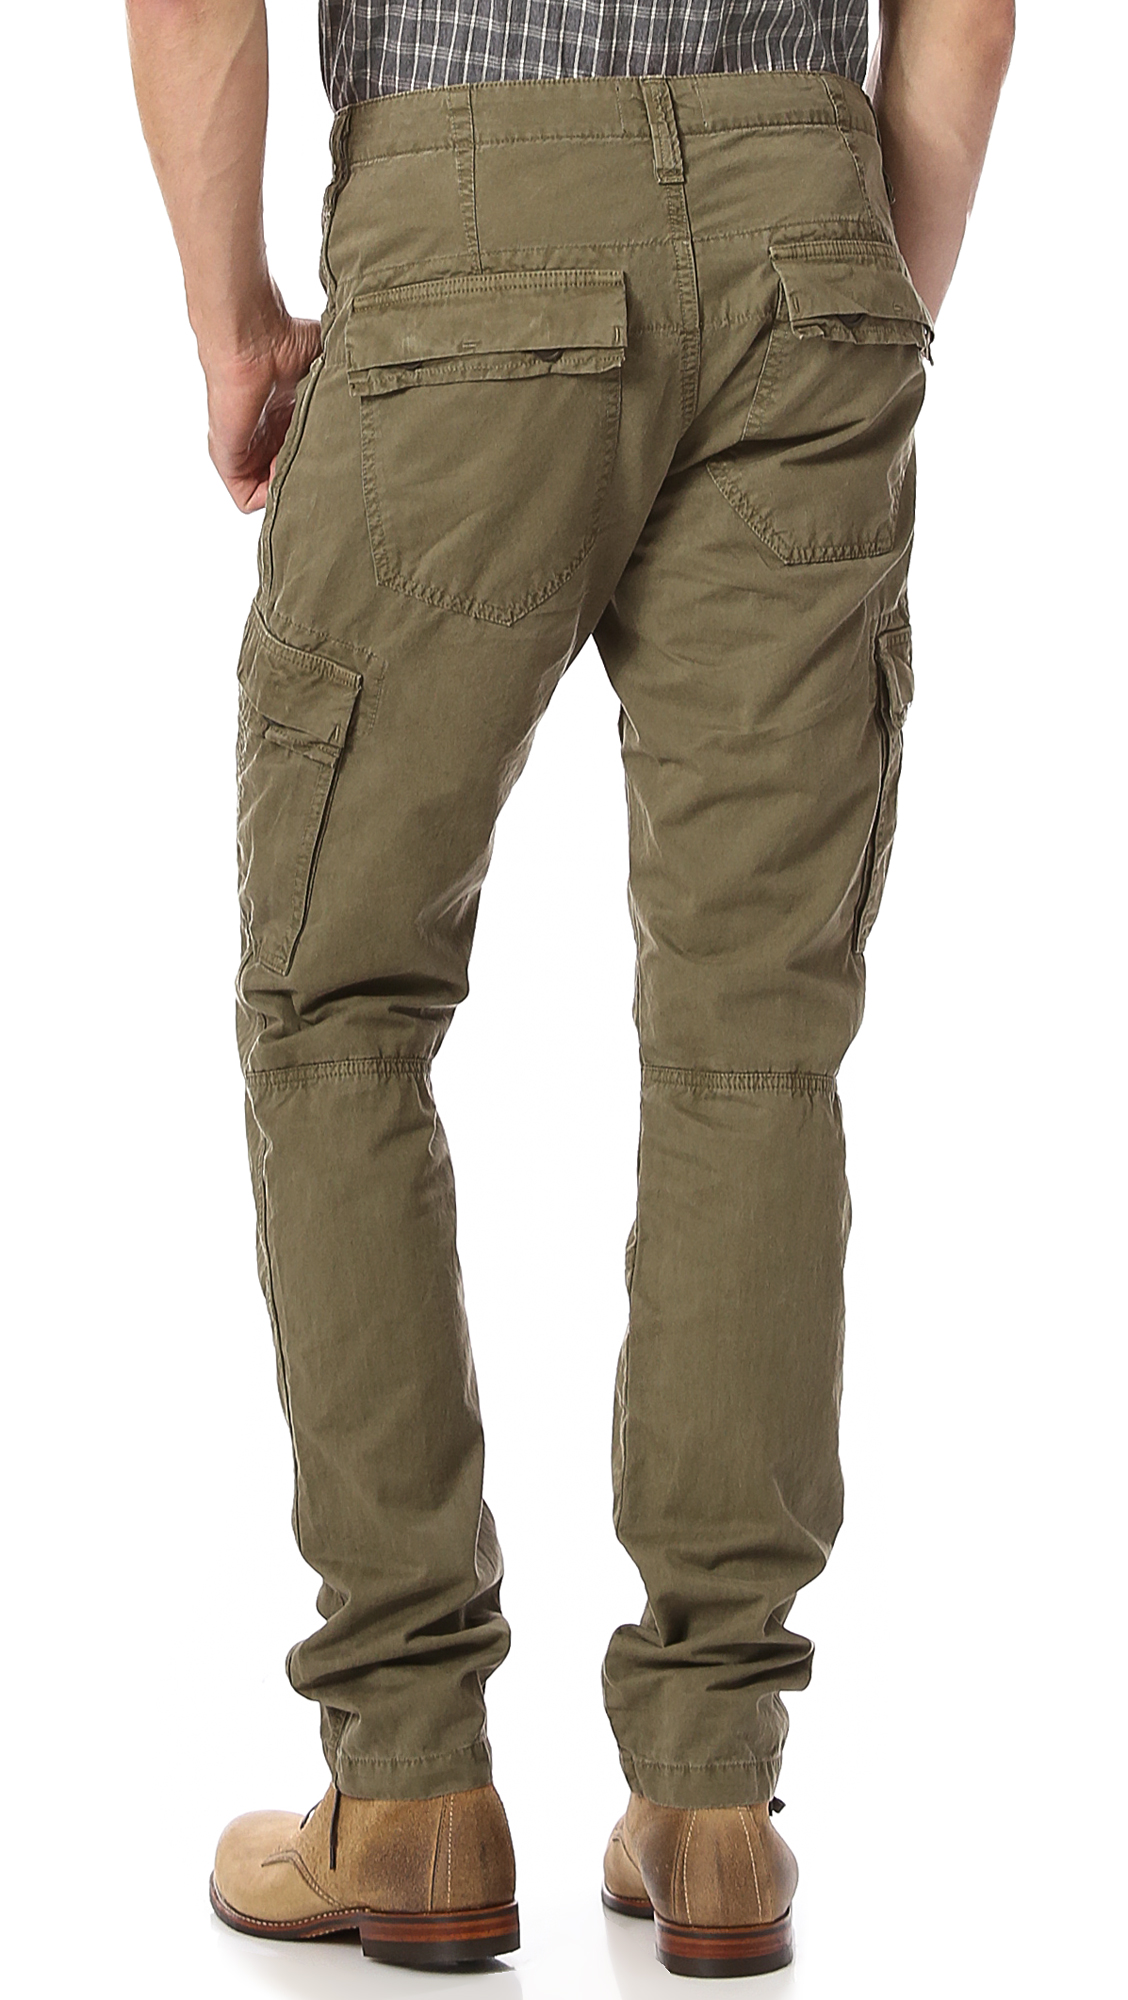 Lyst - J Brand Vintage Trooper Slim Cargo Pants in Natural for Men